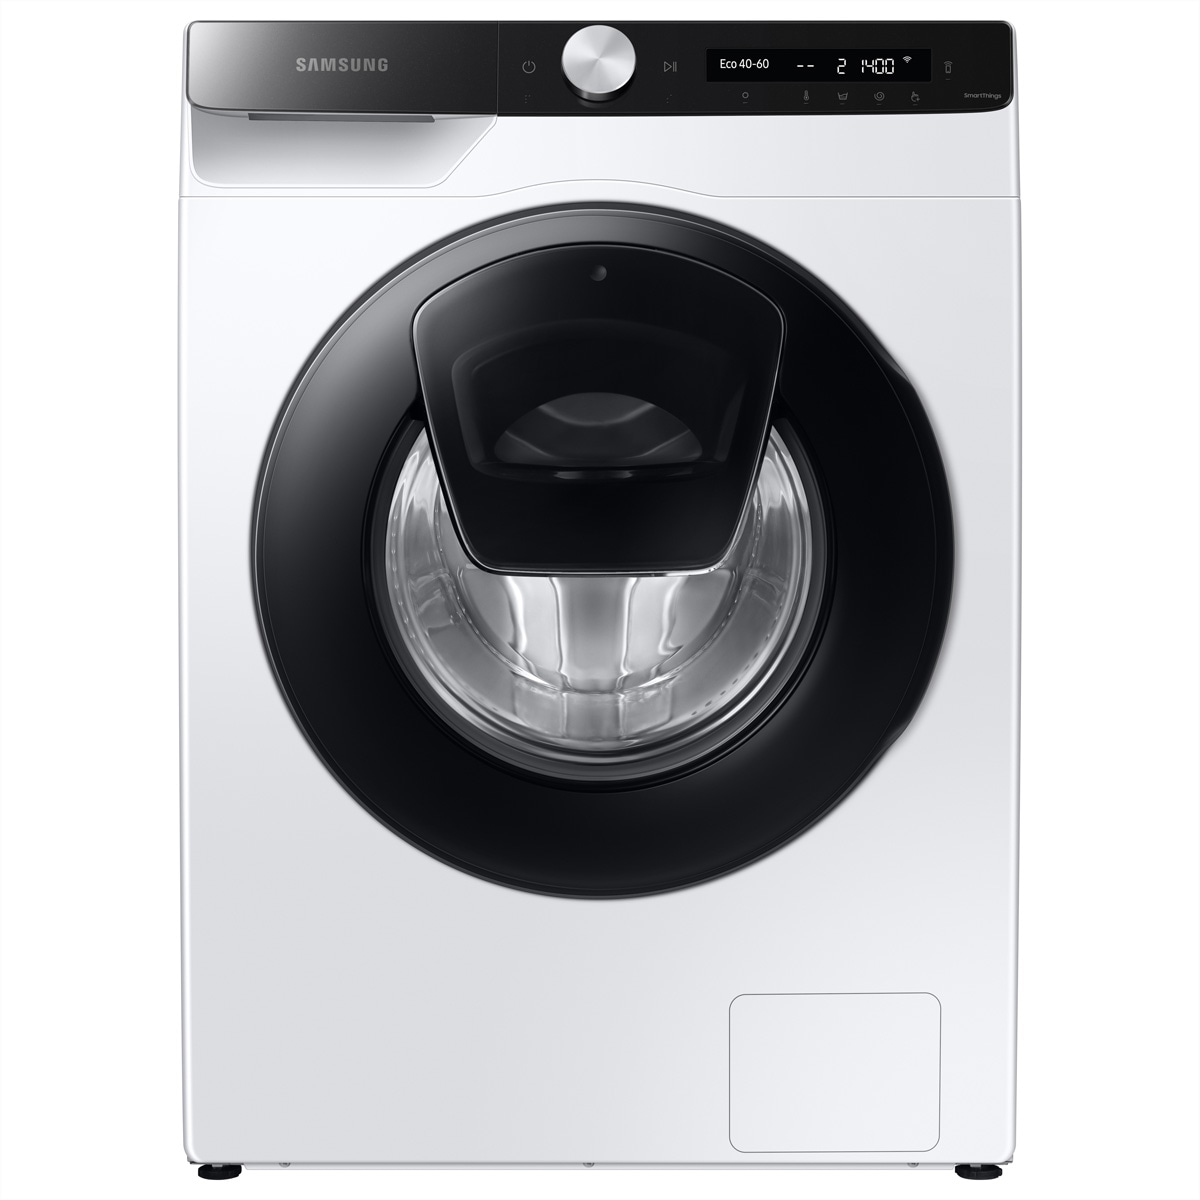 Waschmaschine »Samsung Waschmaschine WW5500, 8kg, Carved Black, WW80T554AAE/S5«,...